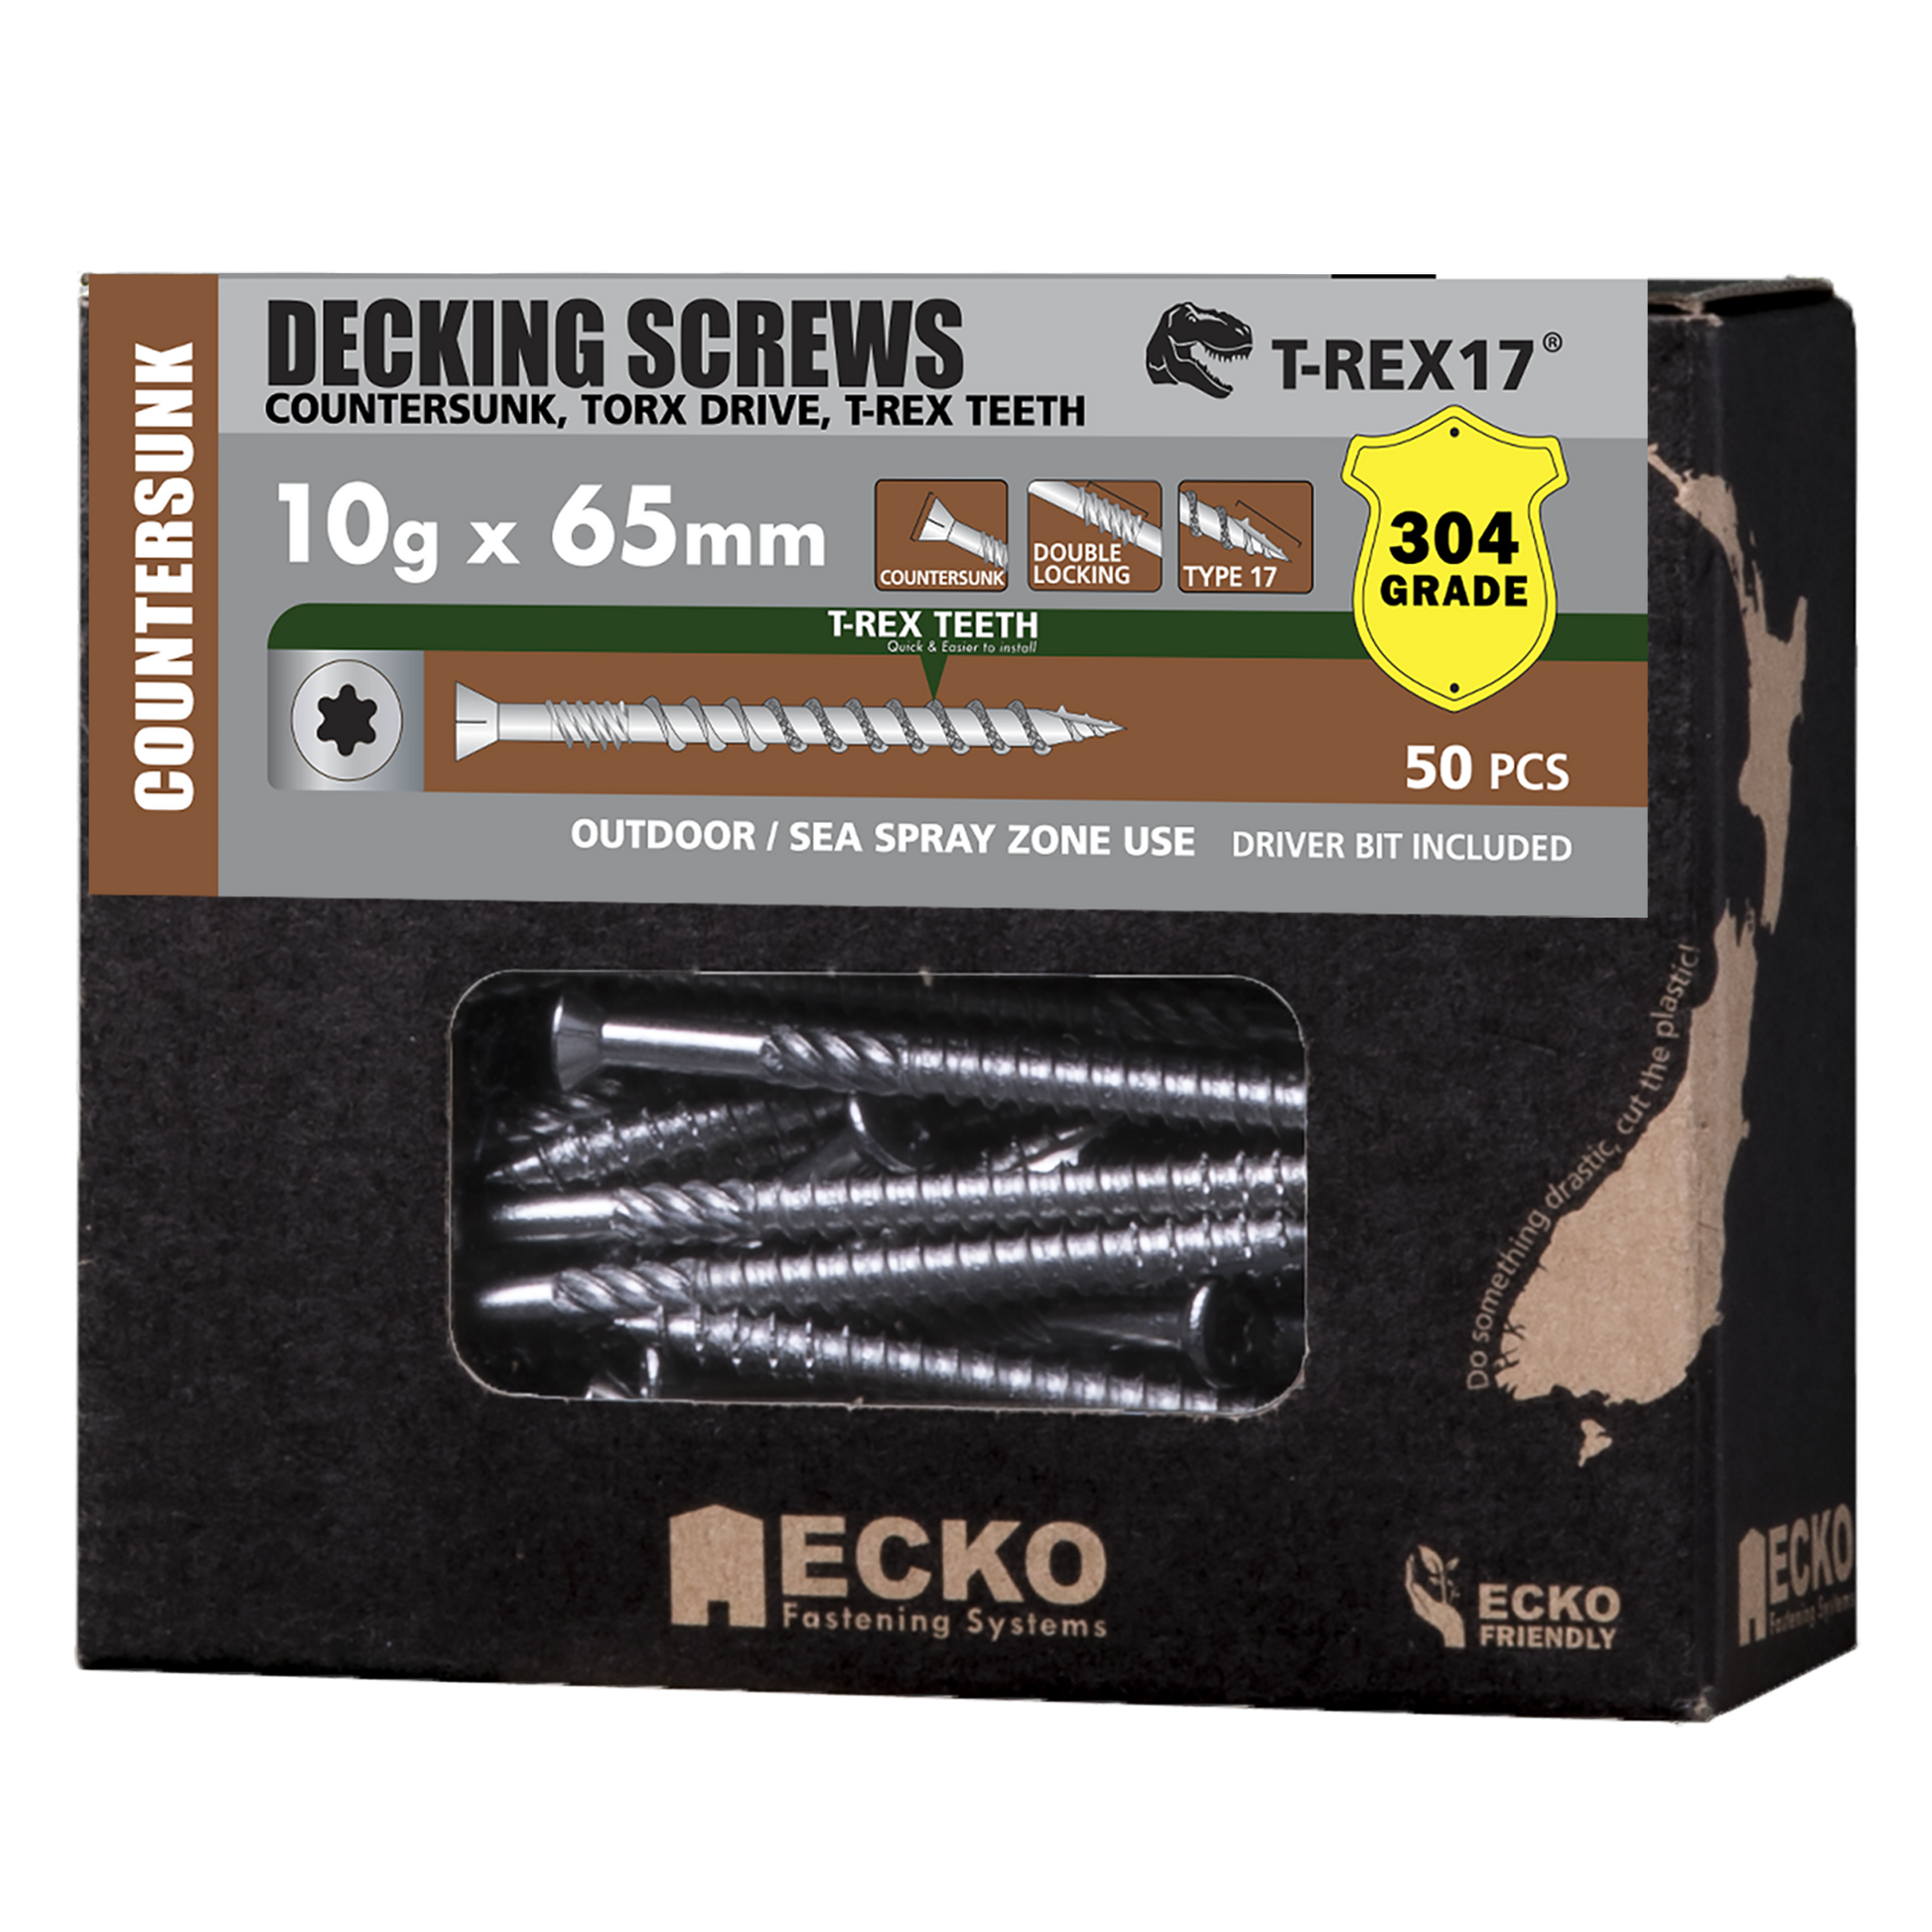 Decking Screw CSK SS304 10Gx65 T-REX17 50-1000 Pk tool-junction-nz